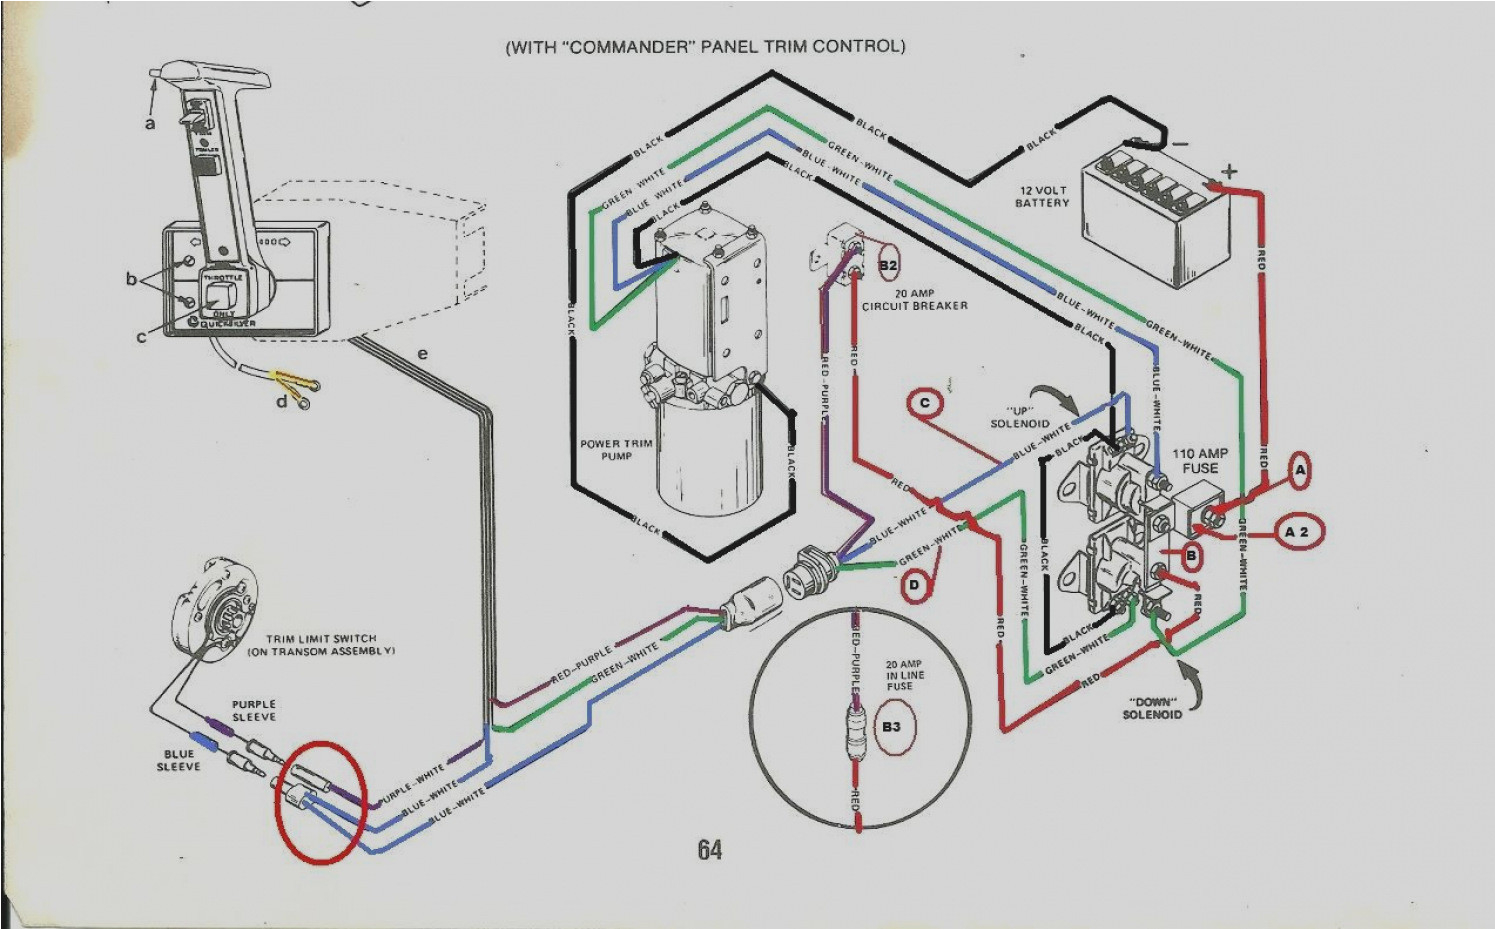 36 volt fork lift battery charger wiring diagram wiring diagram option club car golf cart wiring diagram 36 volts batt charger